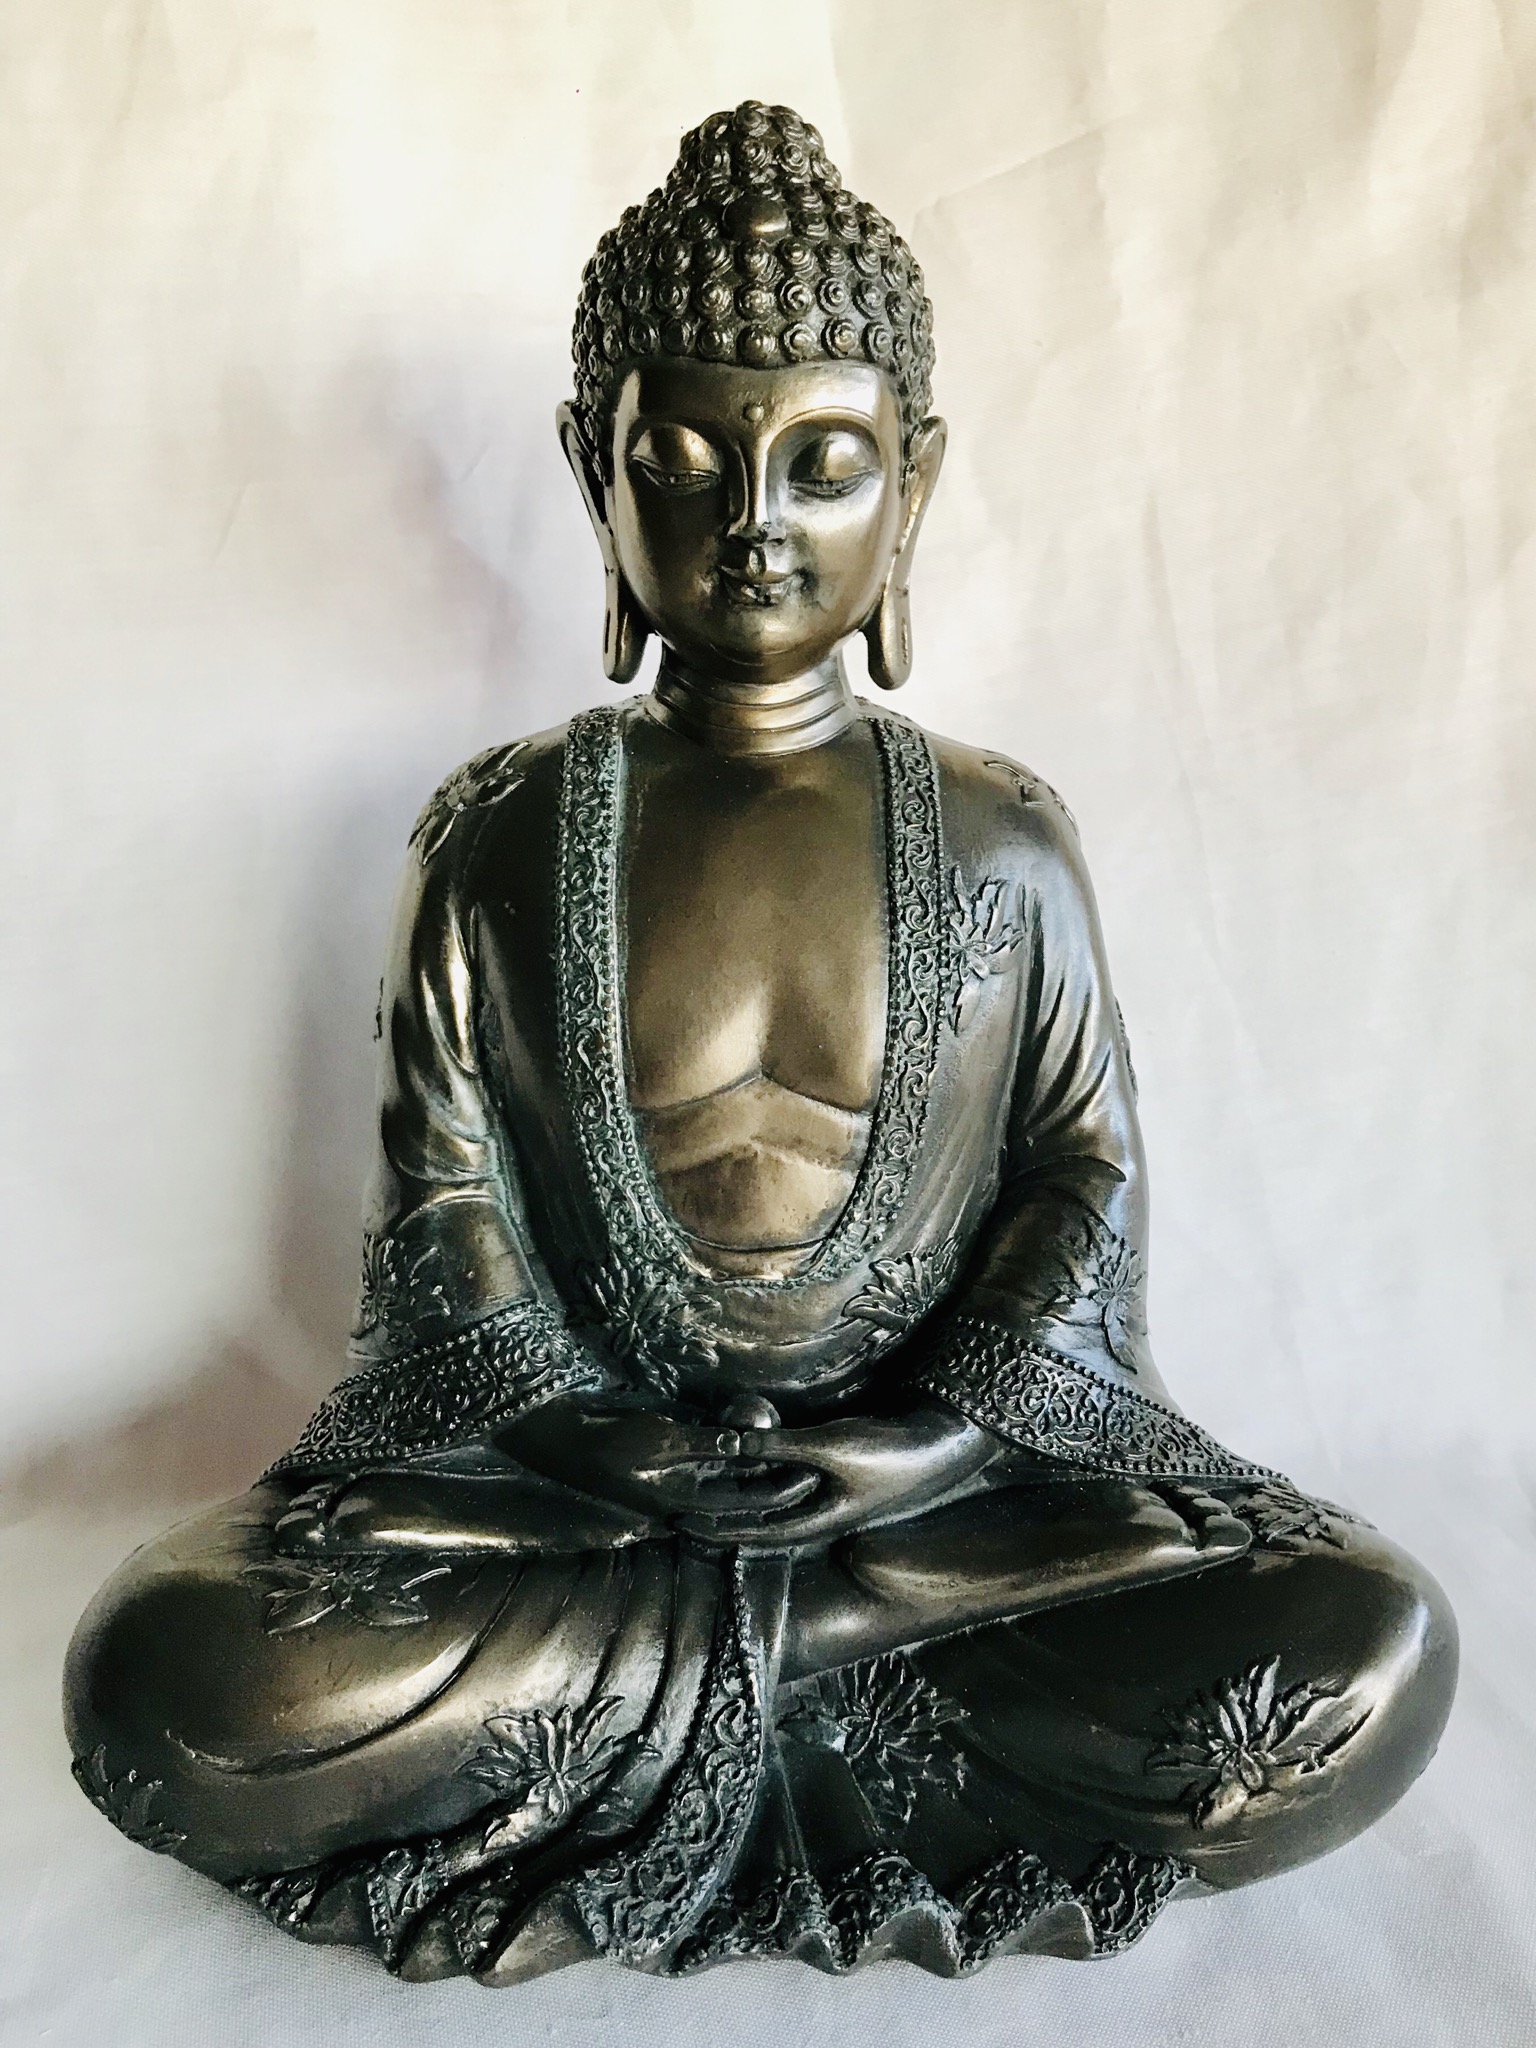 Bedoel Gouverneur Gelach Rulai Gautama Boeddha beeld 22X18CM: Boeddha Old Look: Buddha statue/Boeddha  Beelden: Zhu's Import-export Purmerend, www.madeinchina.nl, detailhandel in  Aziatische producten voornamelijk uit China en India. BTW-ID NL002227713B71  https://m.facebook.com ...